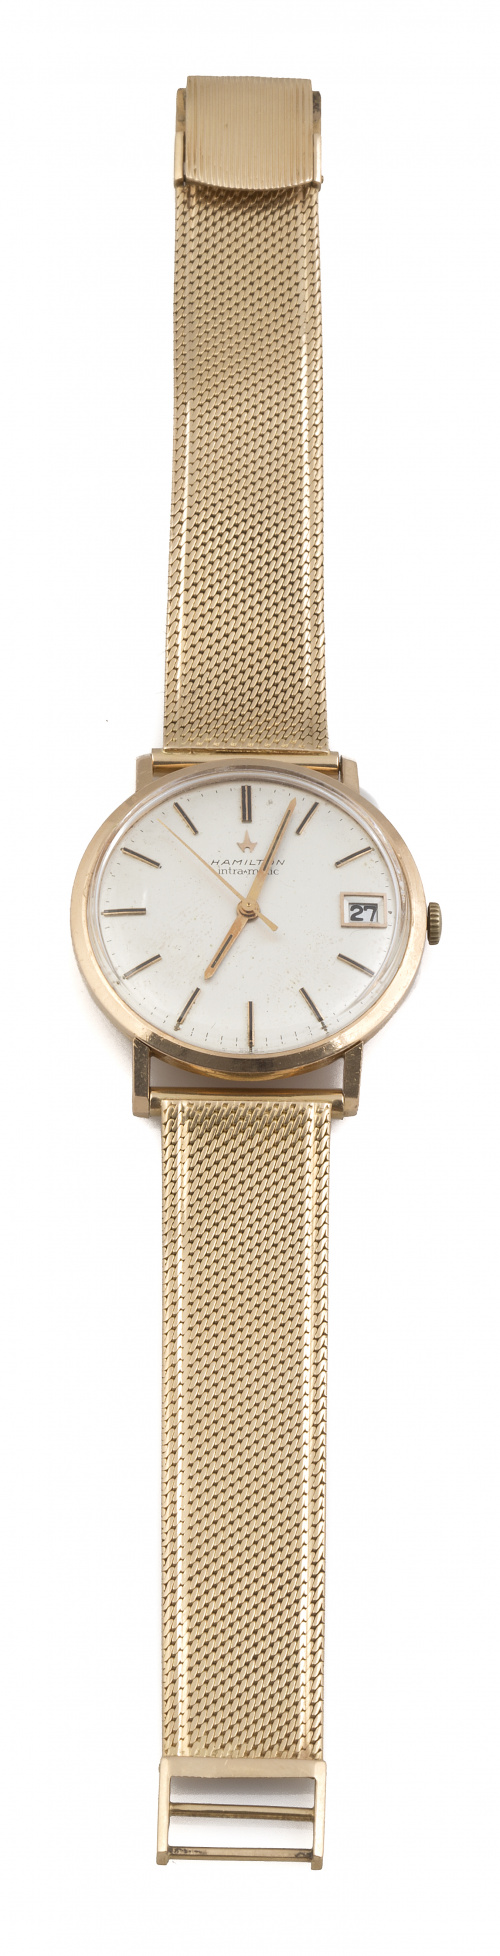 Reloj HAMILTON en oro de 18K, años 60